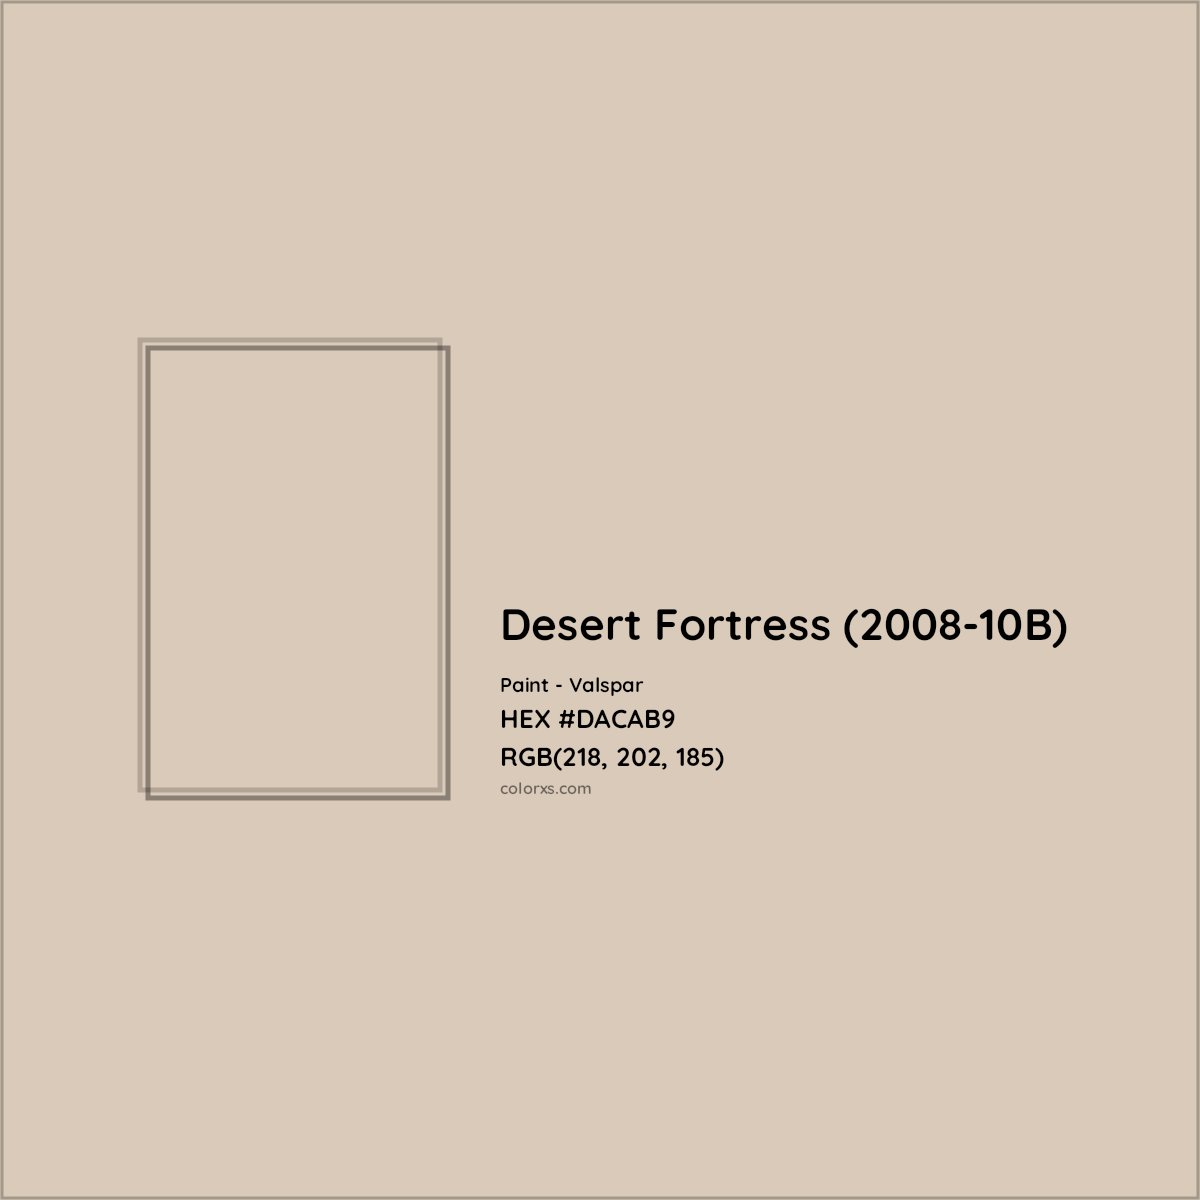 HEX #DACAB9 Desert Fortress (2008-10B) Paint Valspar - Color Code